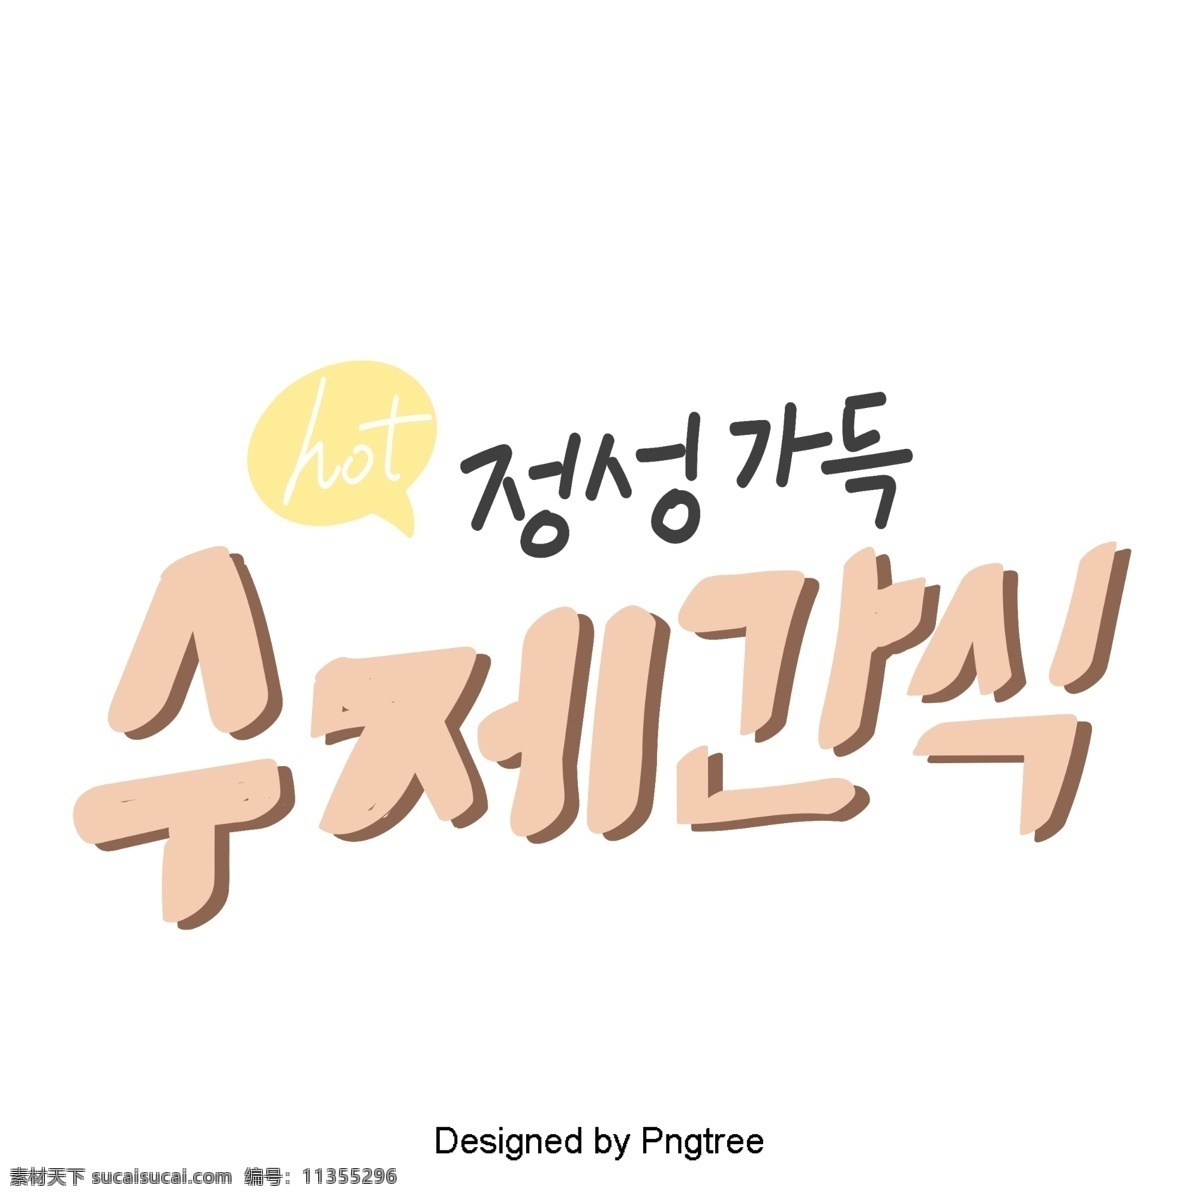 一些 韩国 字体 粉红色 可爱 卡通 风格 甜 茶 元素 字形 甜茶 ai材料 贴纸 动画片 样式 分子 宠物 粉 我的心可以